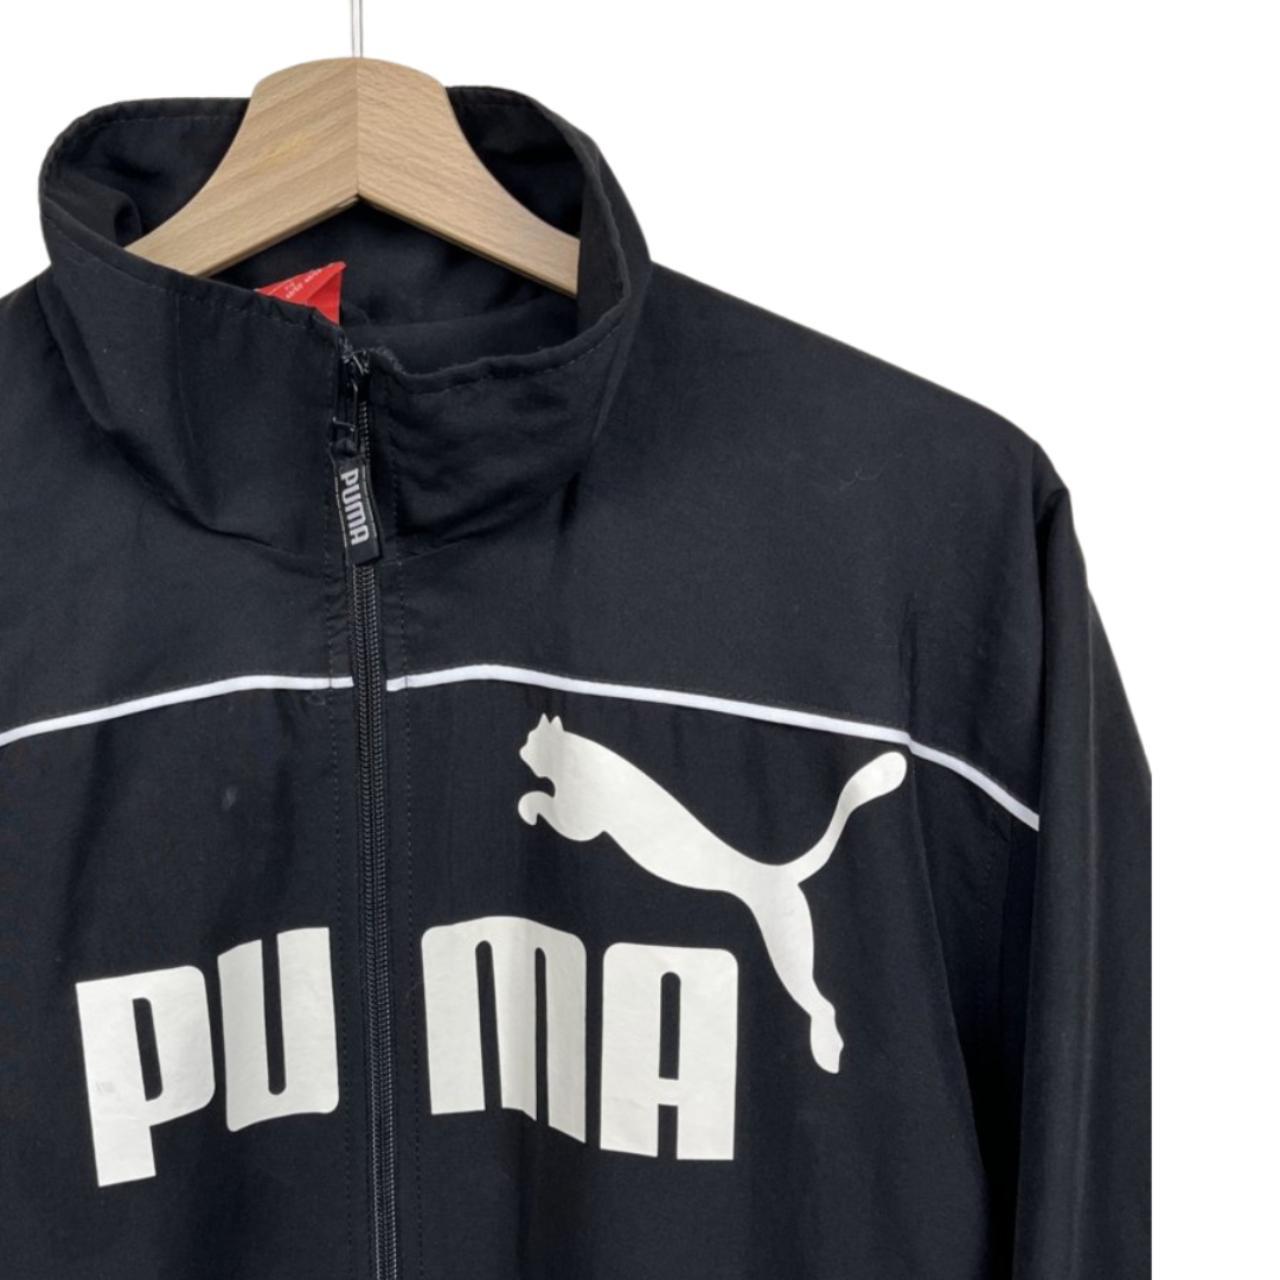 Vintage Puma Windbreaker Jacket Black coloured.... - Depop